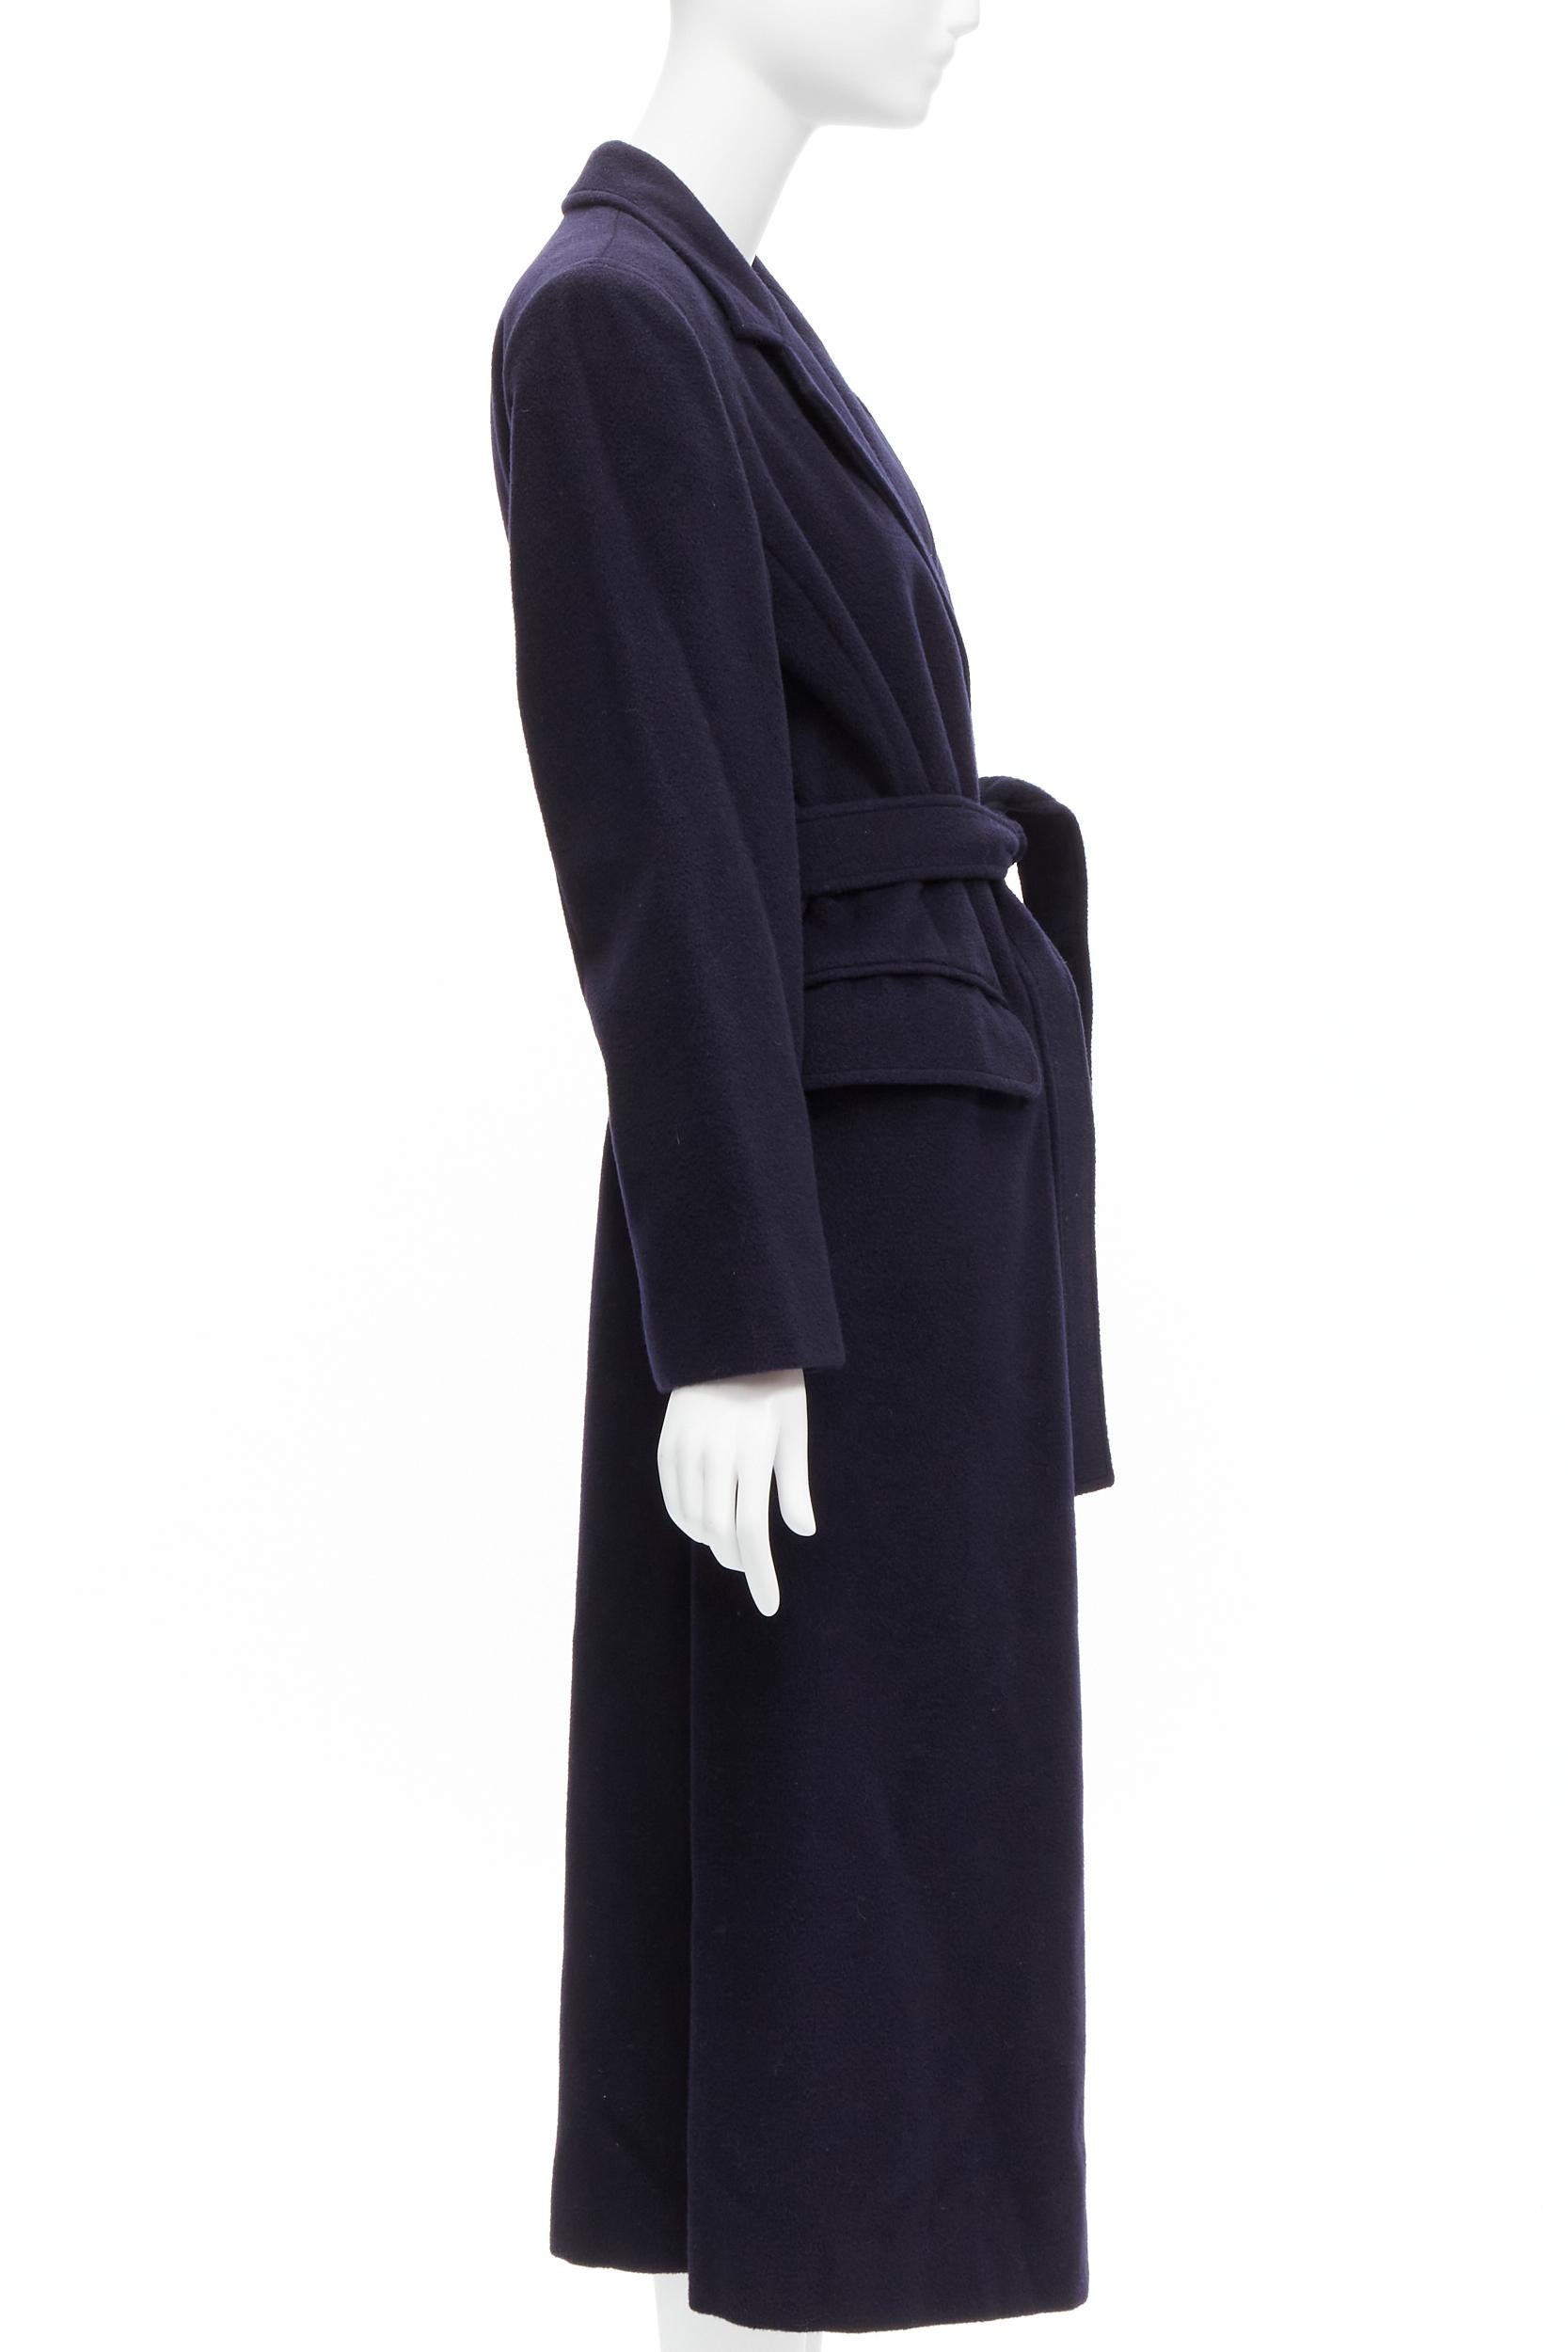 MAX MARA dark navy 100% virgin wool belted longline robe coat IT42 M 1